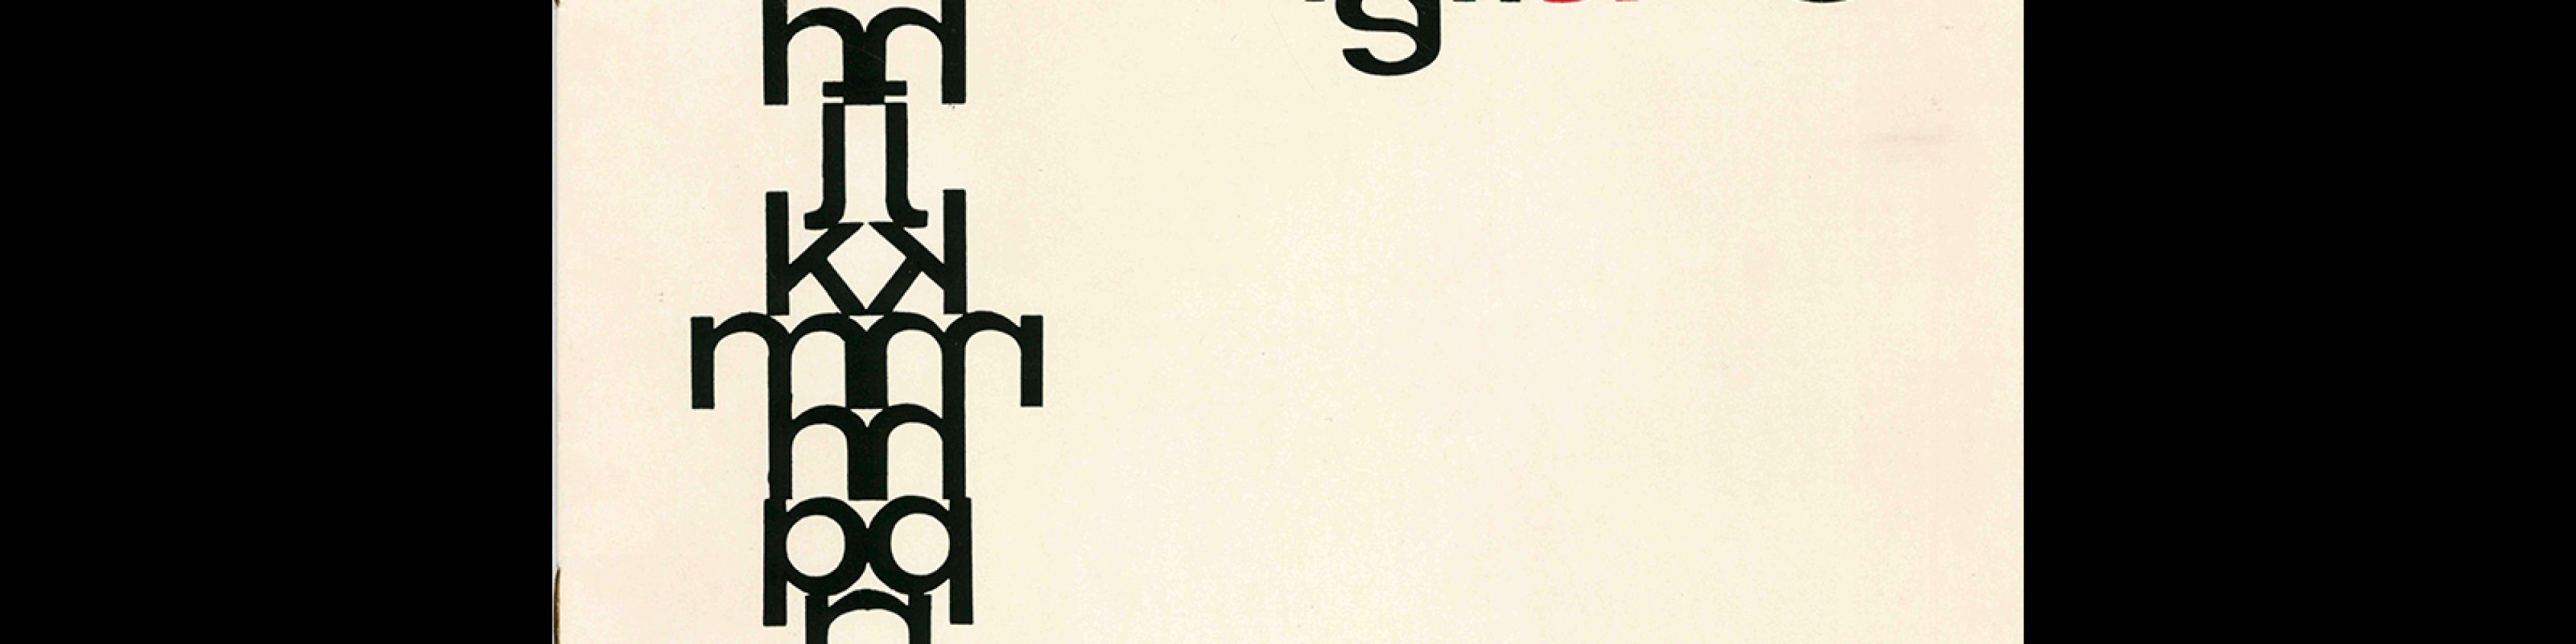 Typografia, ročník 67, 06, 1964. Cover design by Josef Blažej